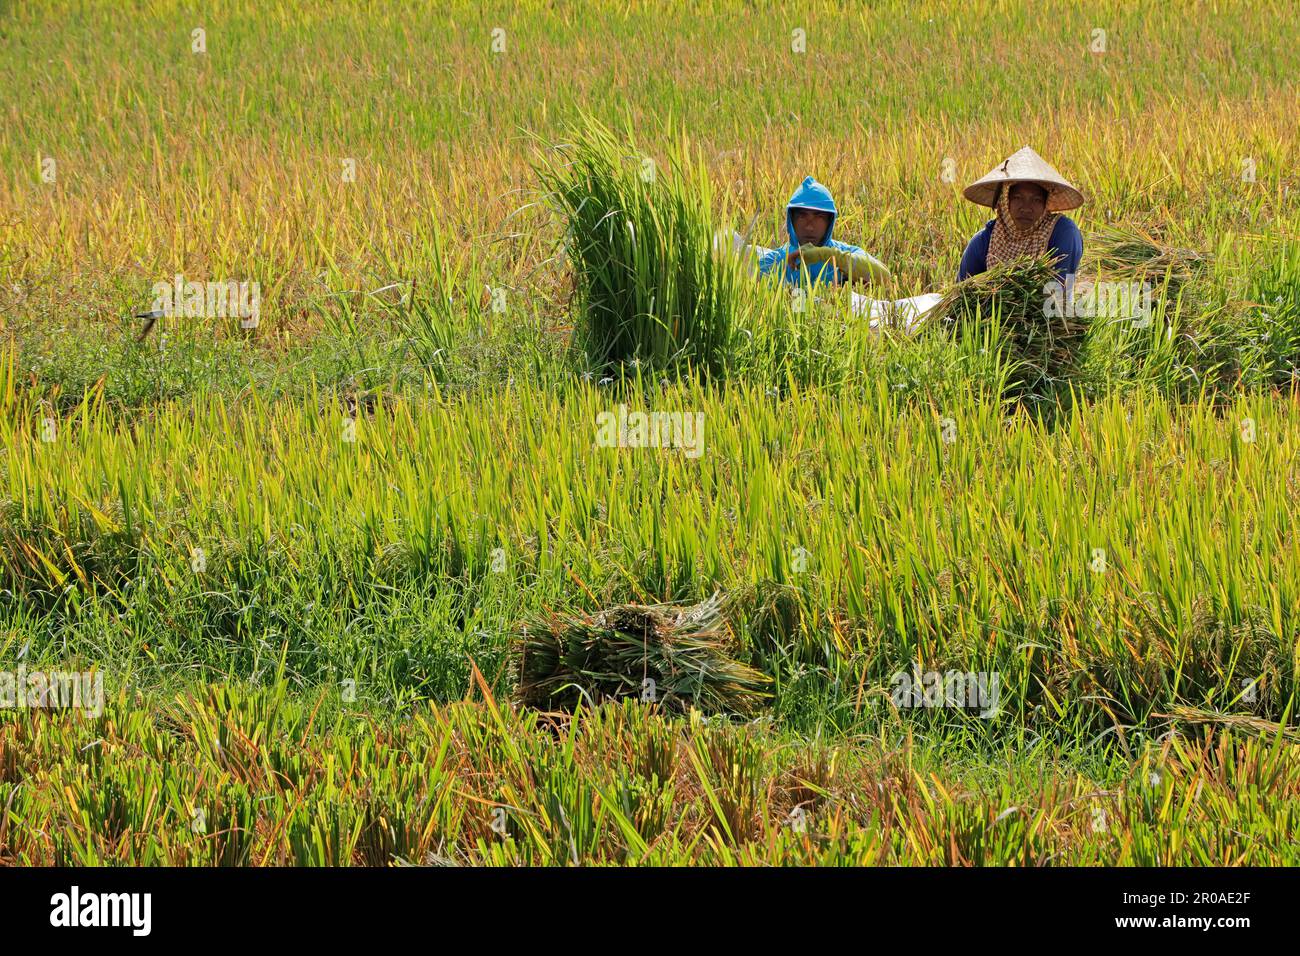 Ubud, Bali, Indonésie - 6 septembre 2019 : les agriculteurs locaux travaillant dans un riz paddy rural occupent la place centrale dans la culture et la cuisine indonésiennes Banque D'Images